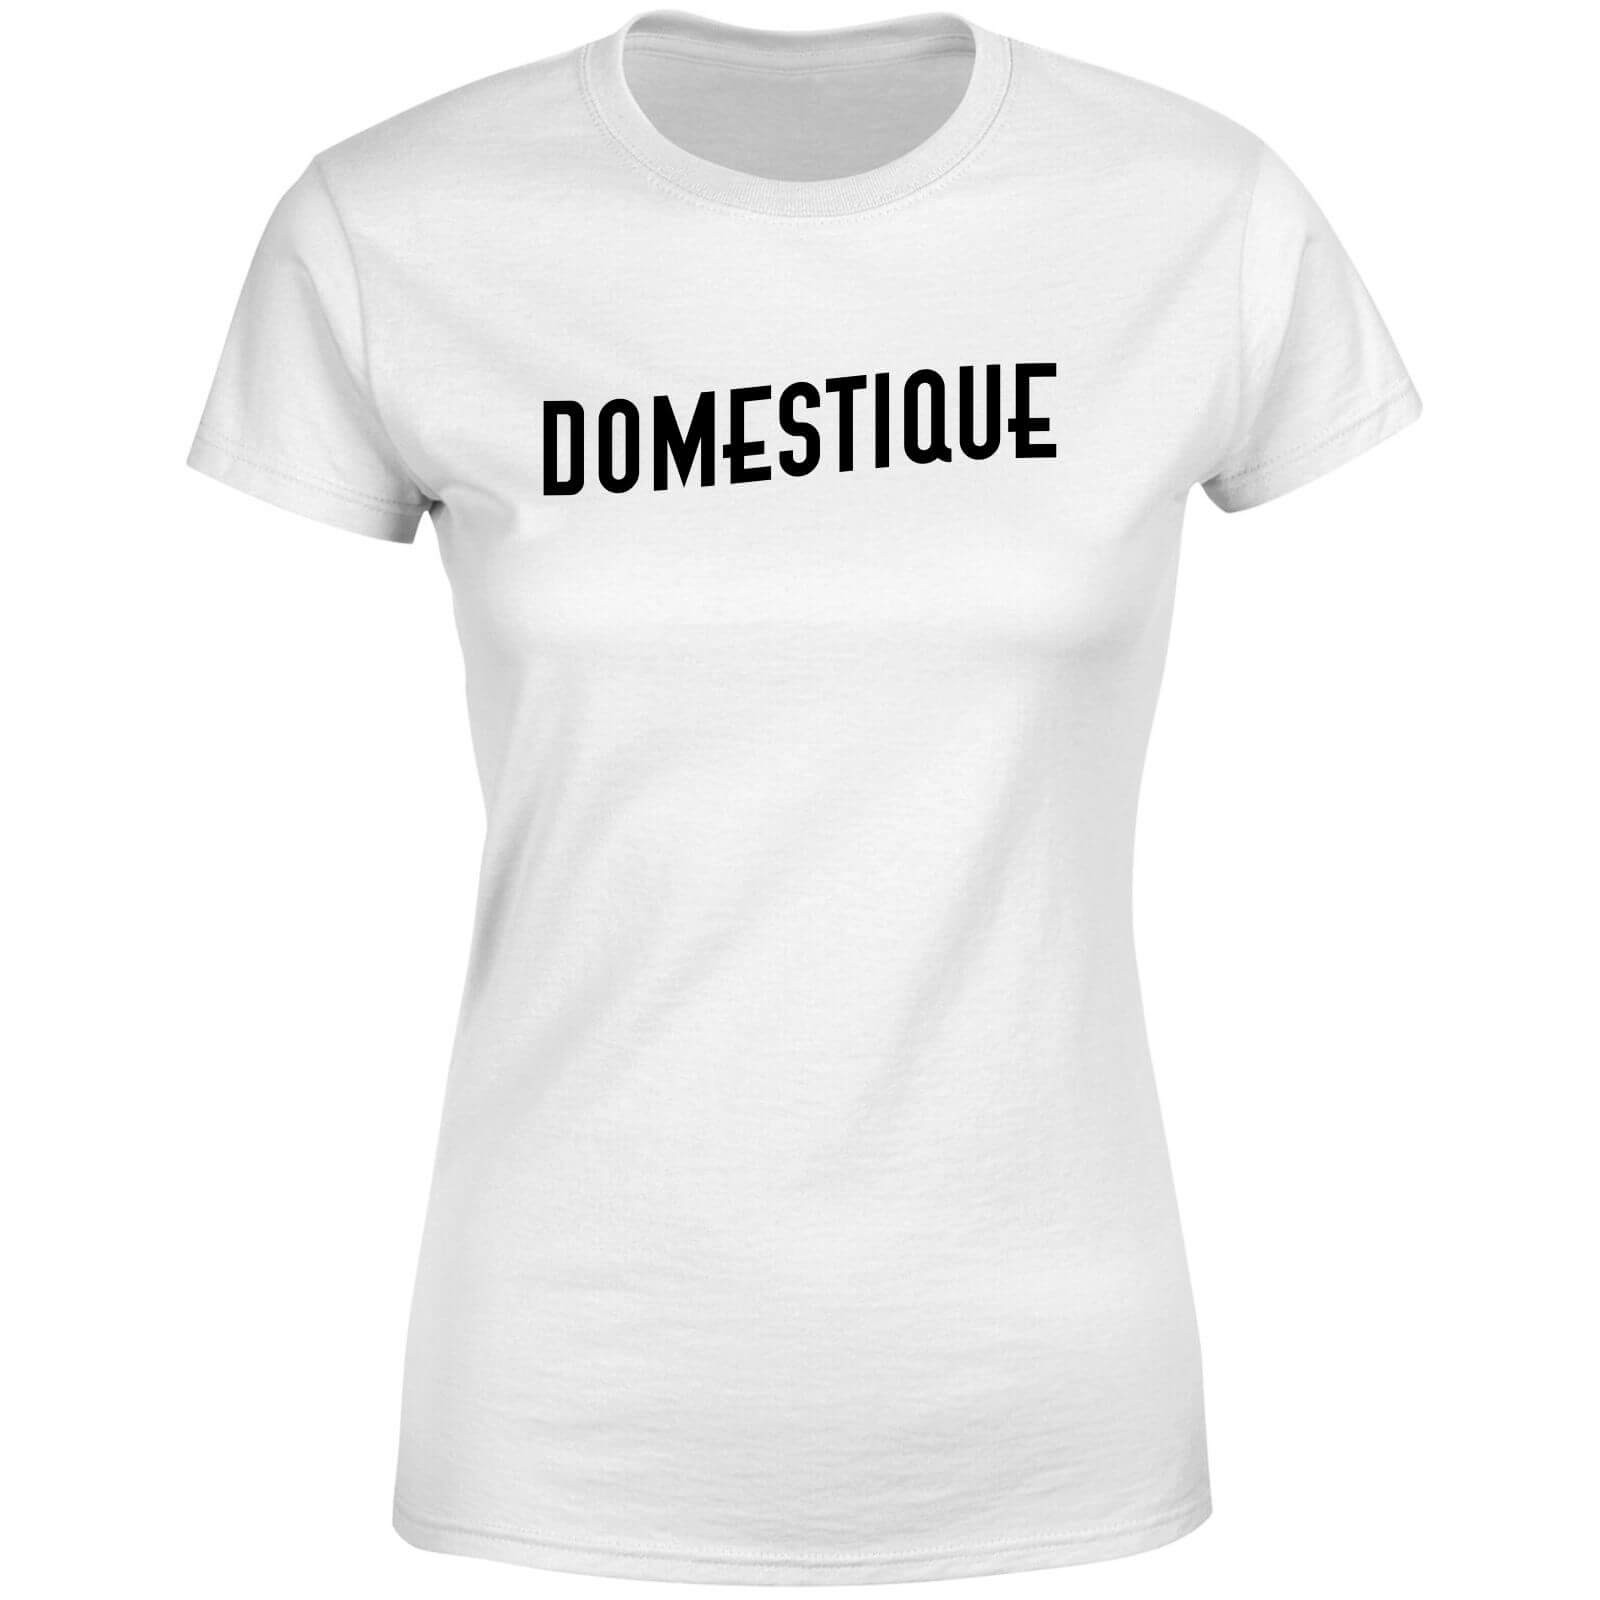 Domestique Women's T-Shirt - White - M - White